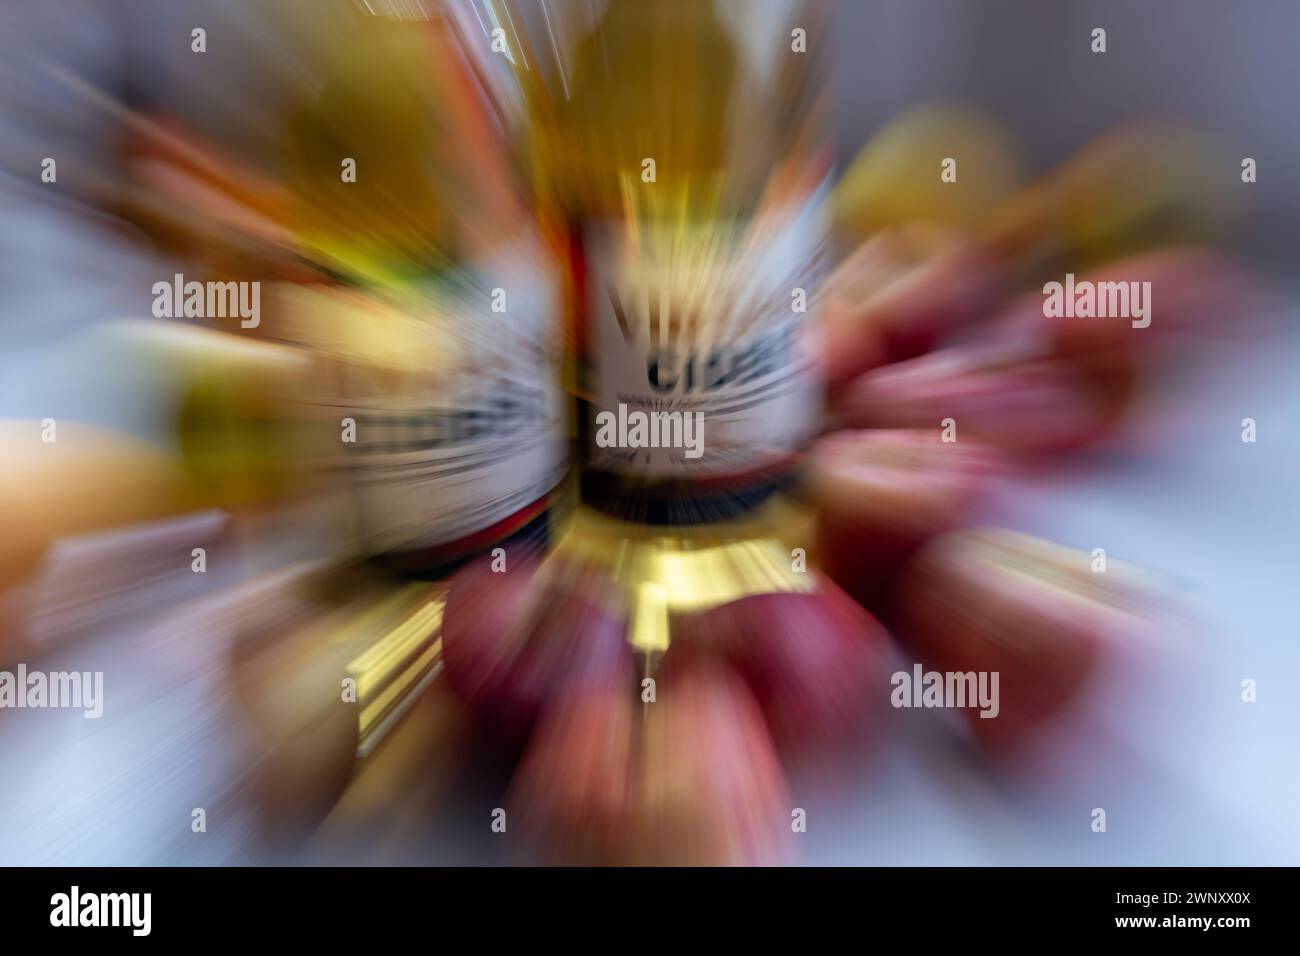 Ein Zoom-Hintergrund mit Flaschen mit Vintage-Cidre, umgeben von Äpfeln. Stockfoto